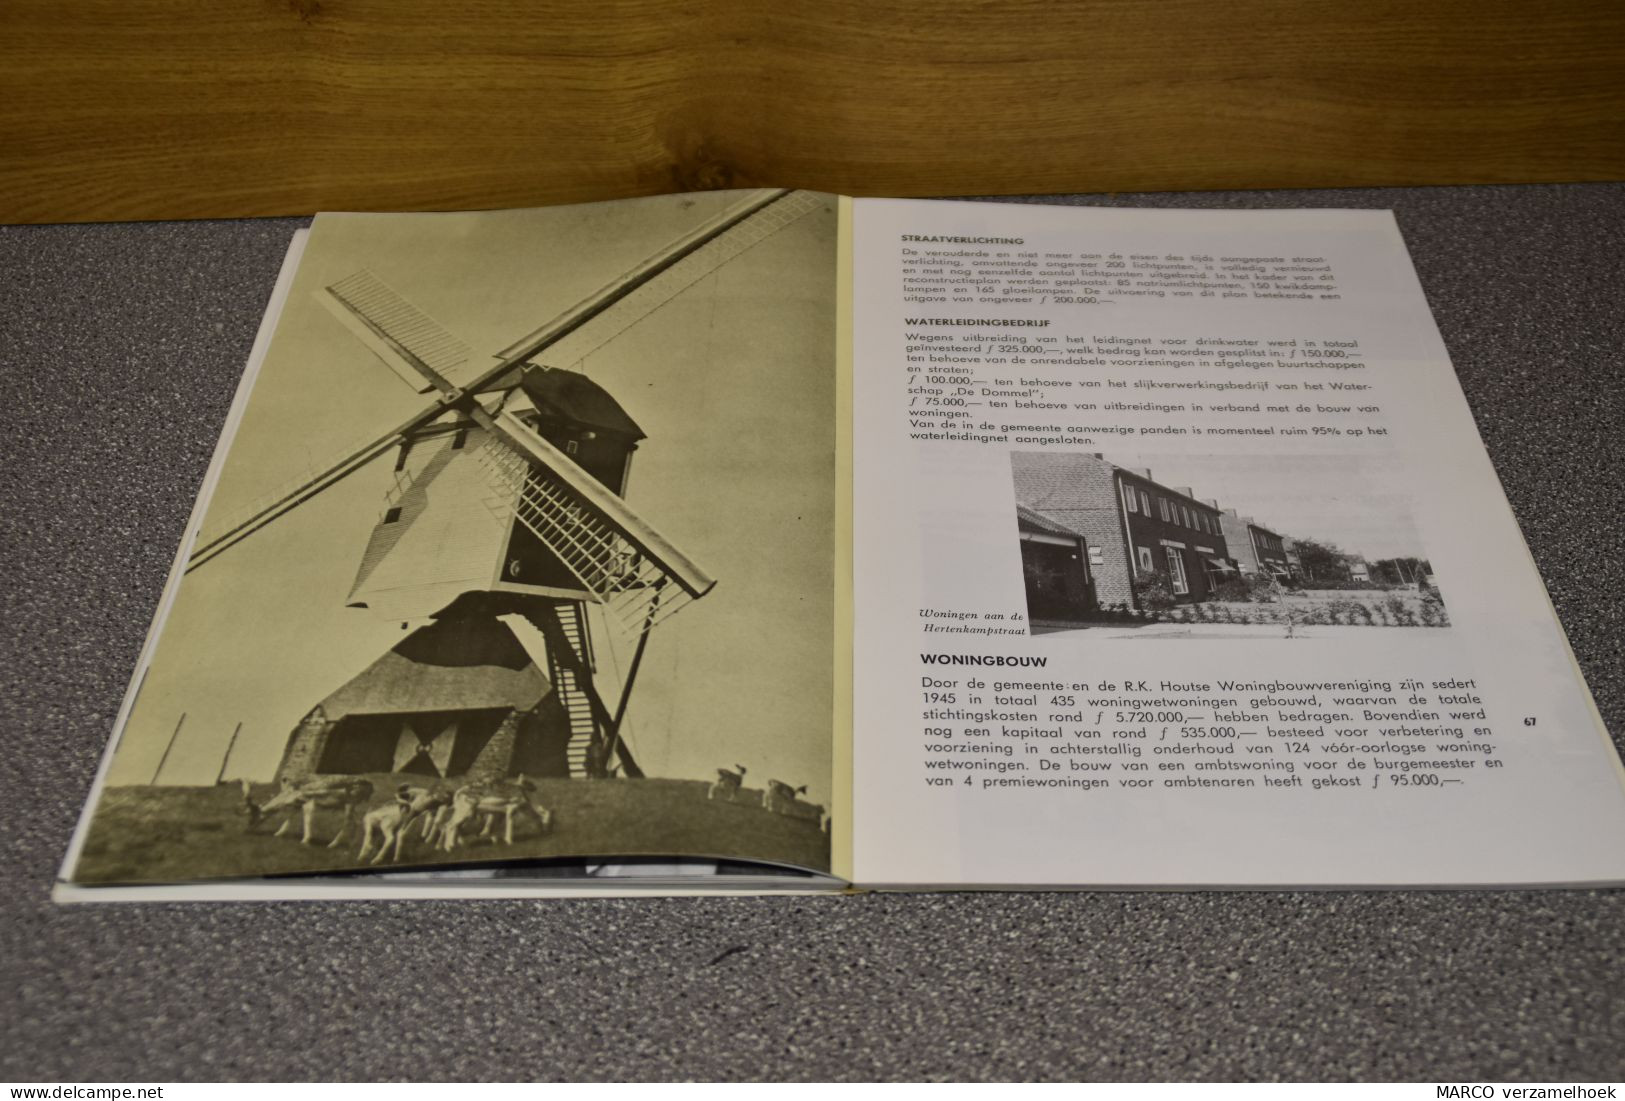 Groei En Ontwikkeling MIERLO (NL) 1963 - Praktisch